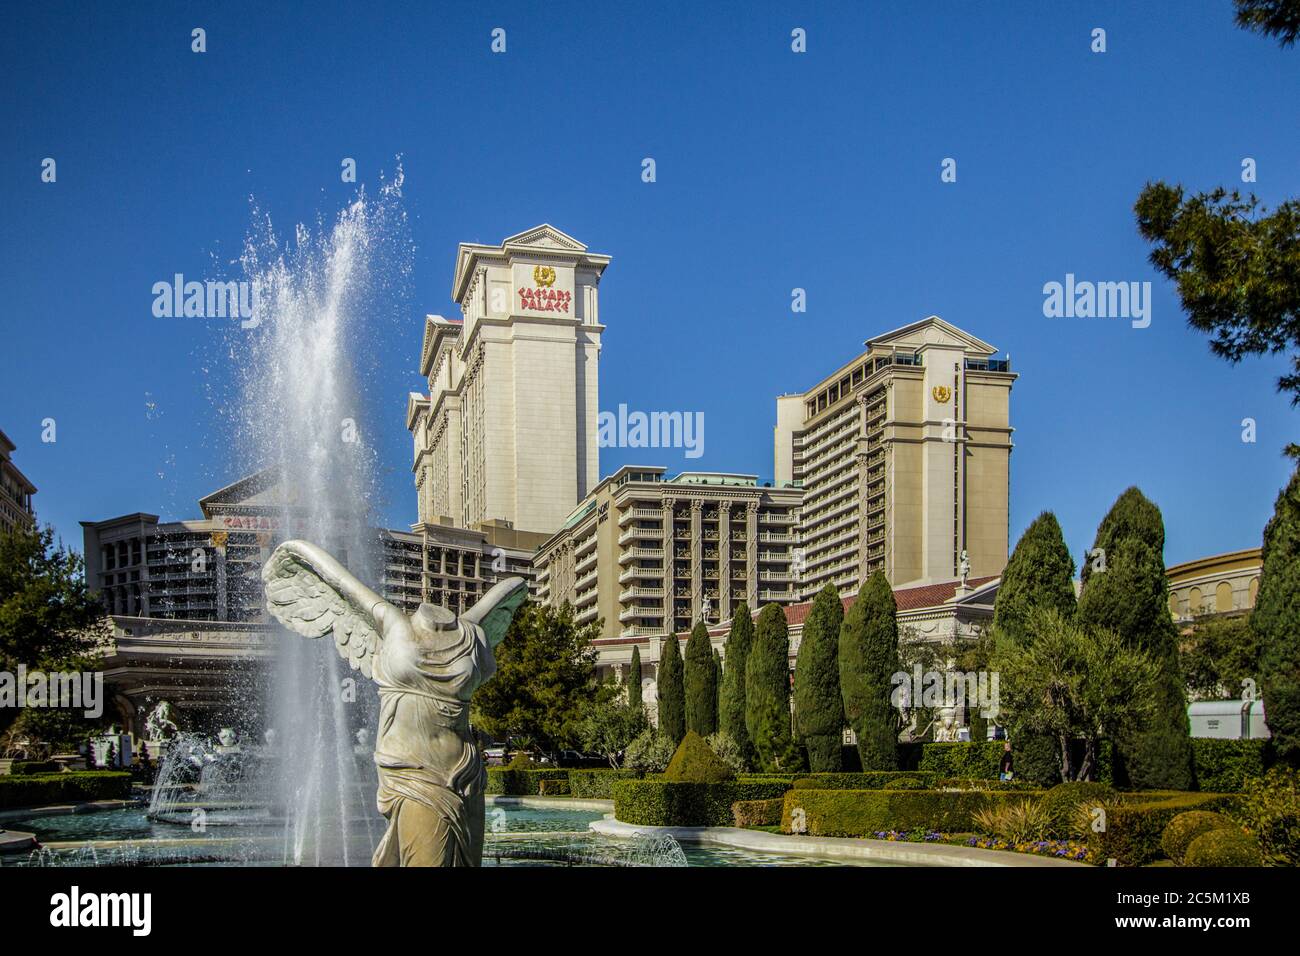 Las Vegas, Nevada, USA - 20. Februar 2020: Außenansicht des Caesars Palace Casinos und Resorts mit Statue und Brunnen. Stockfoto